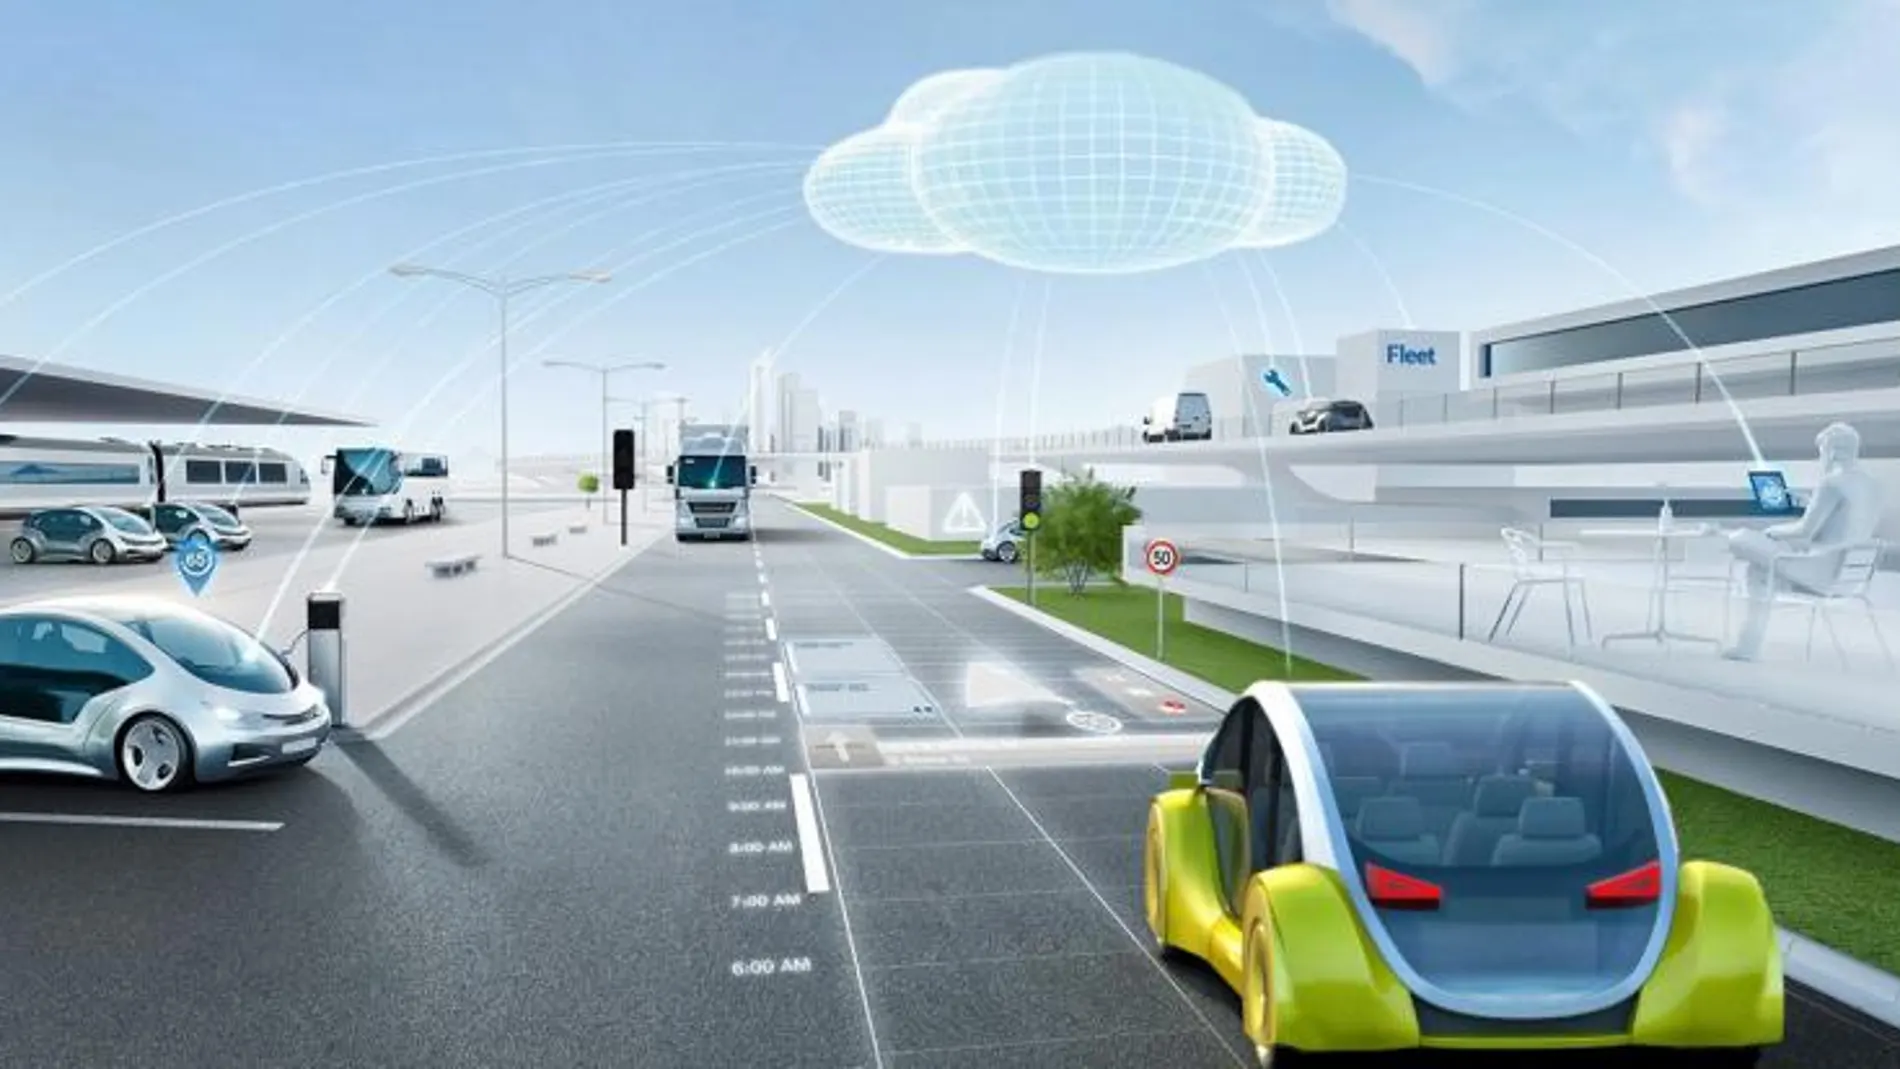 El futuro de la conducción autónoma está en que los vehículos tomen decisiones ante situaciones imprevisibles como lo haría un humano al volante